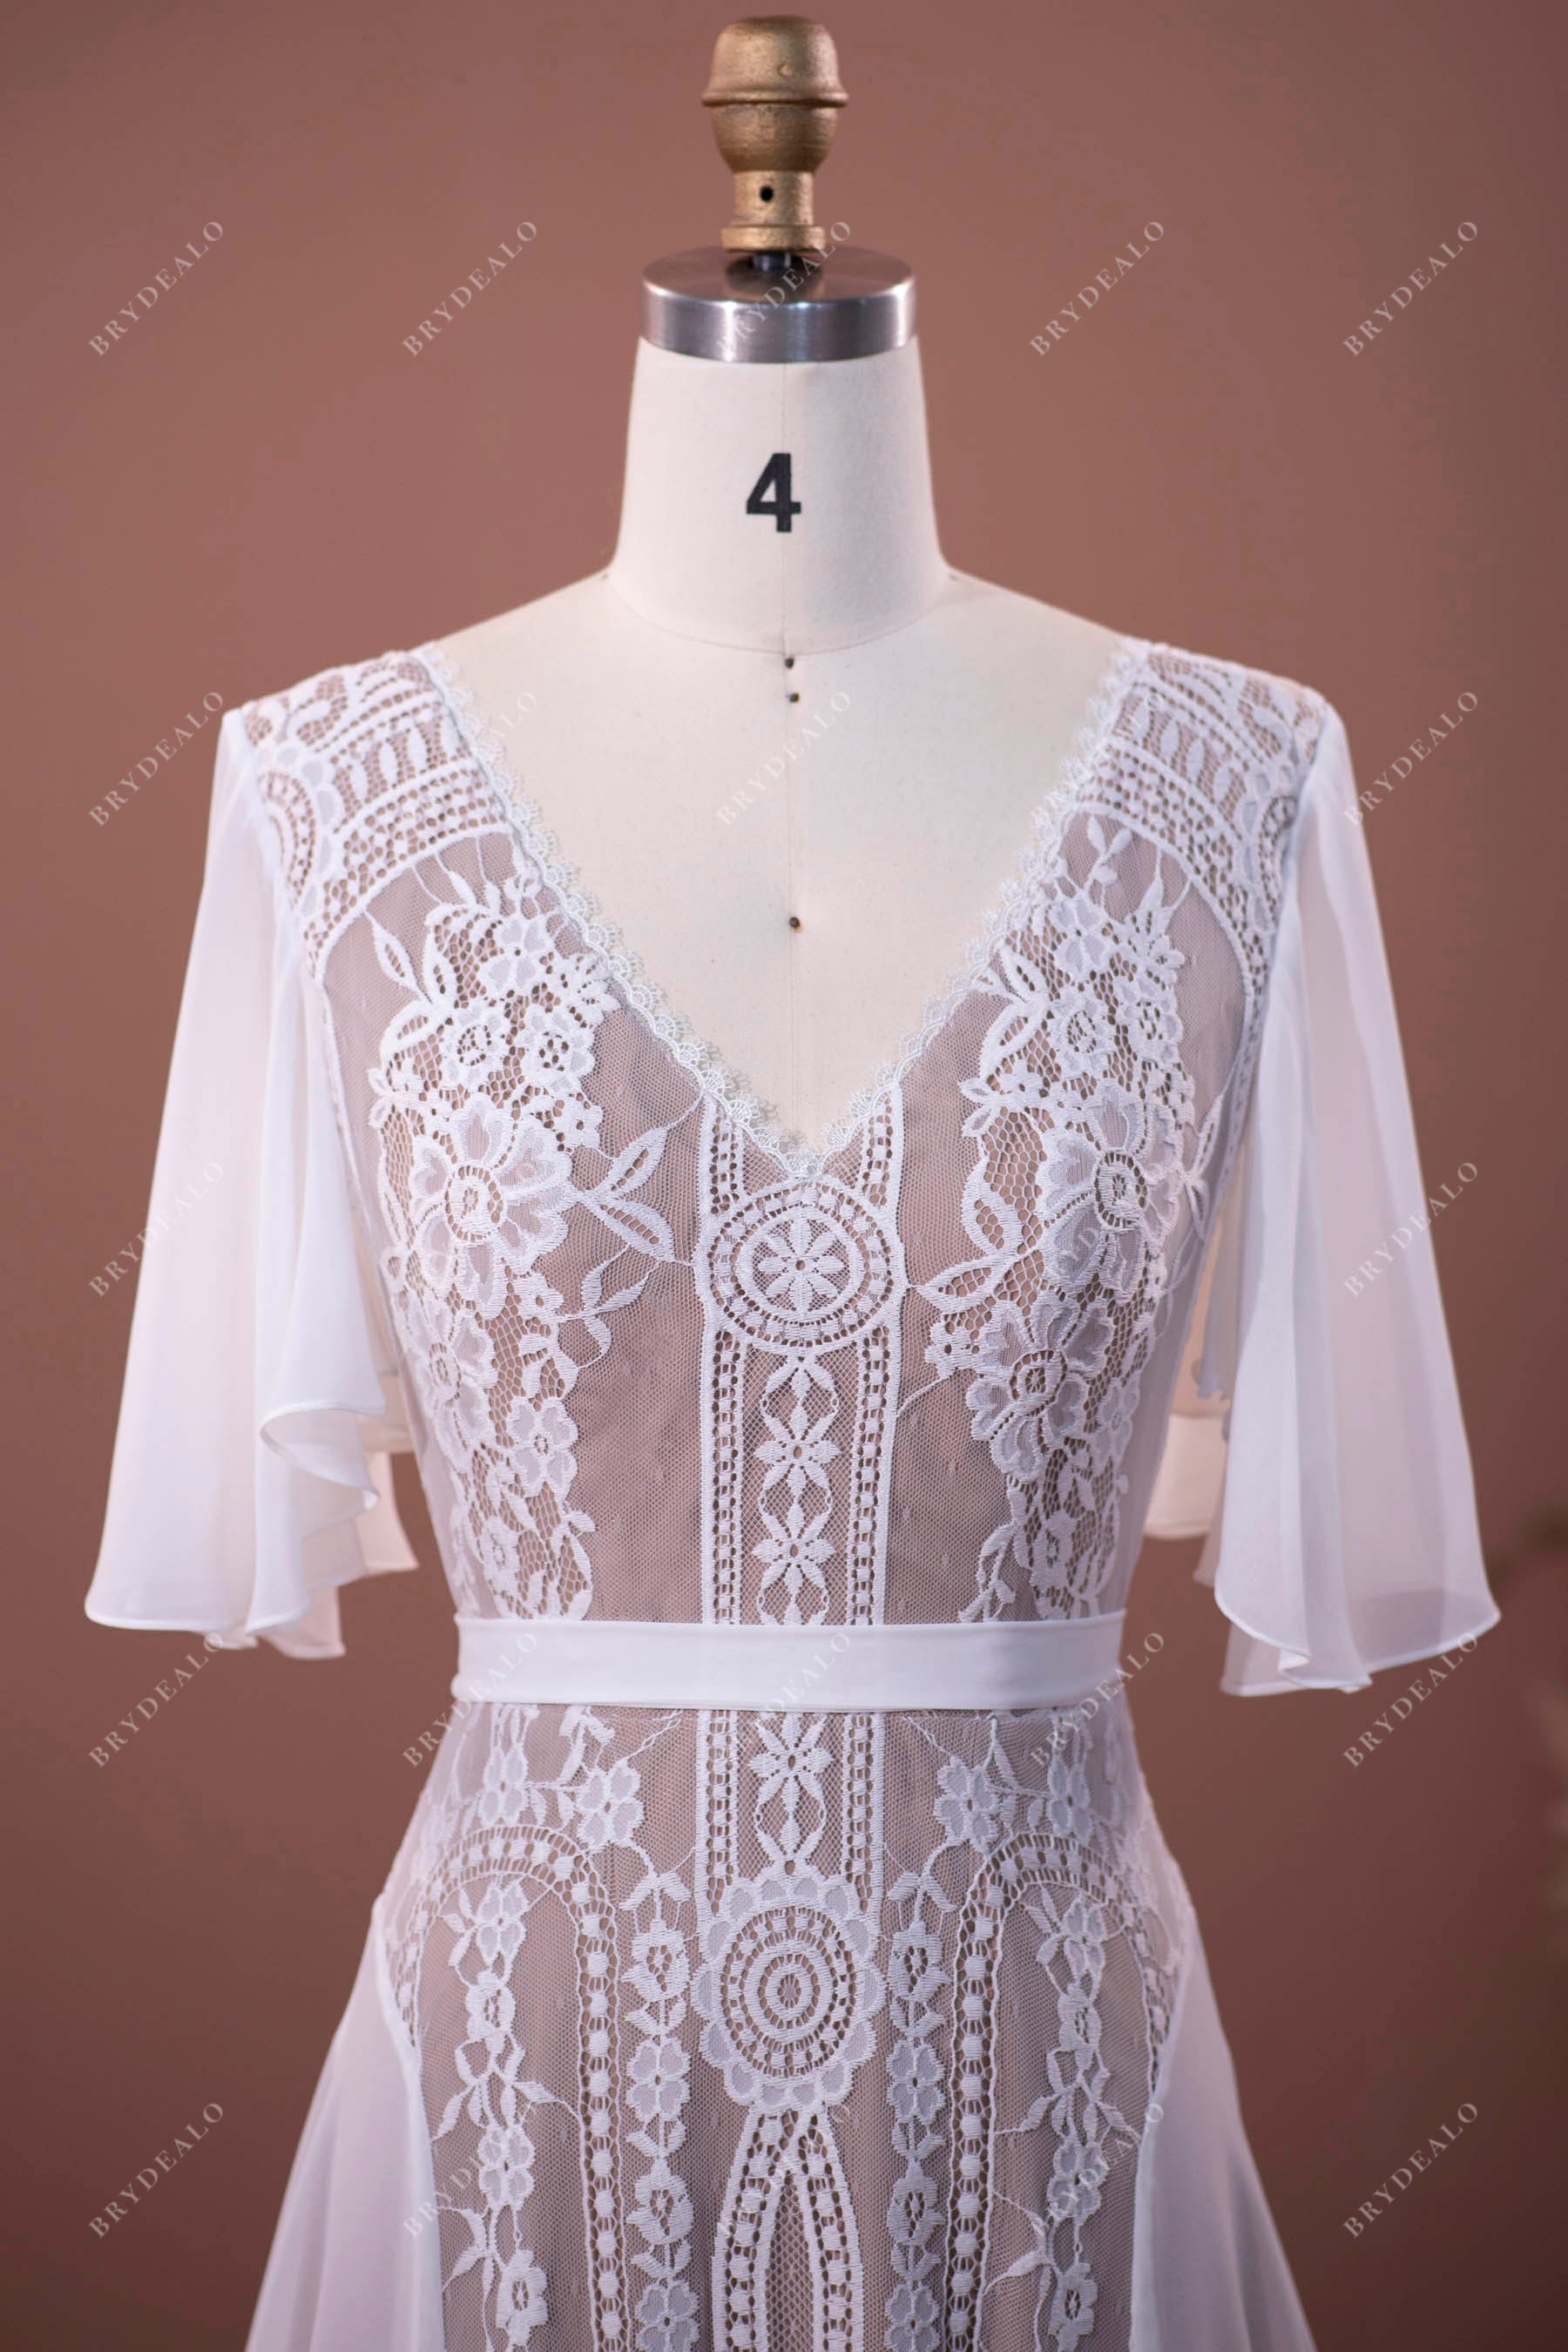 Flutter Sleeve V-neck Lace Chiffon Boho Wedding Dress Sample Sale